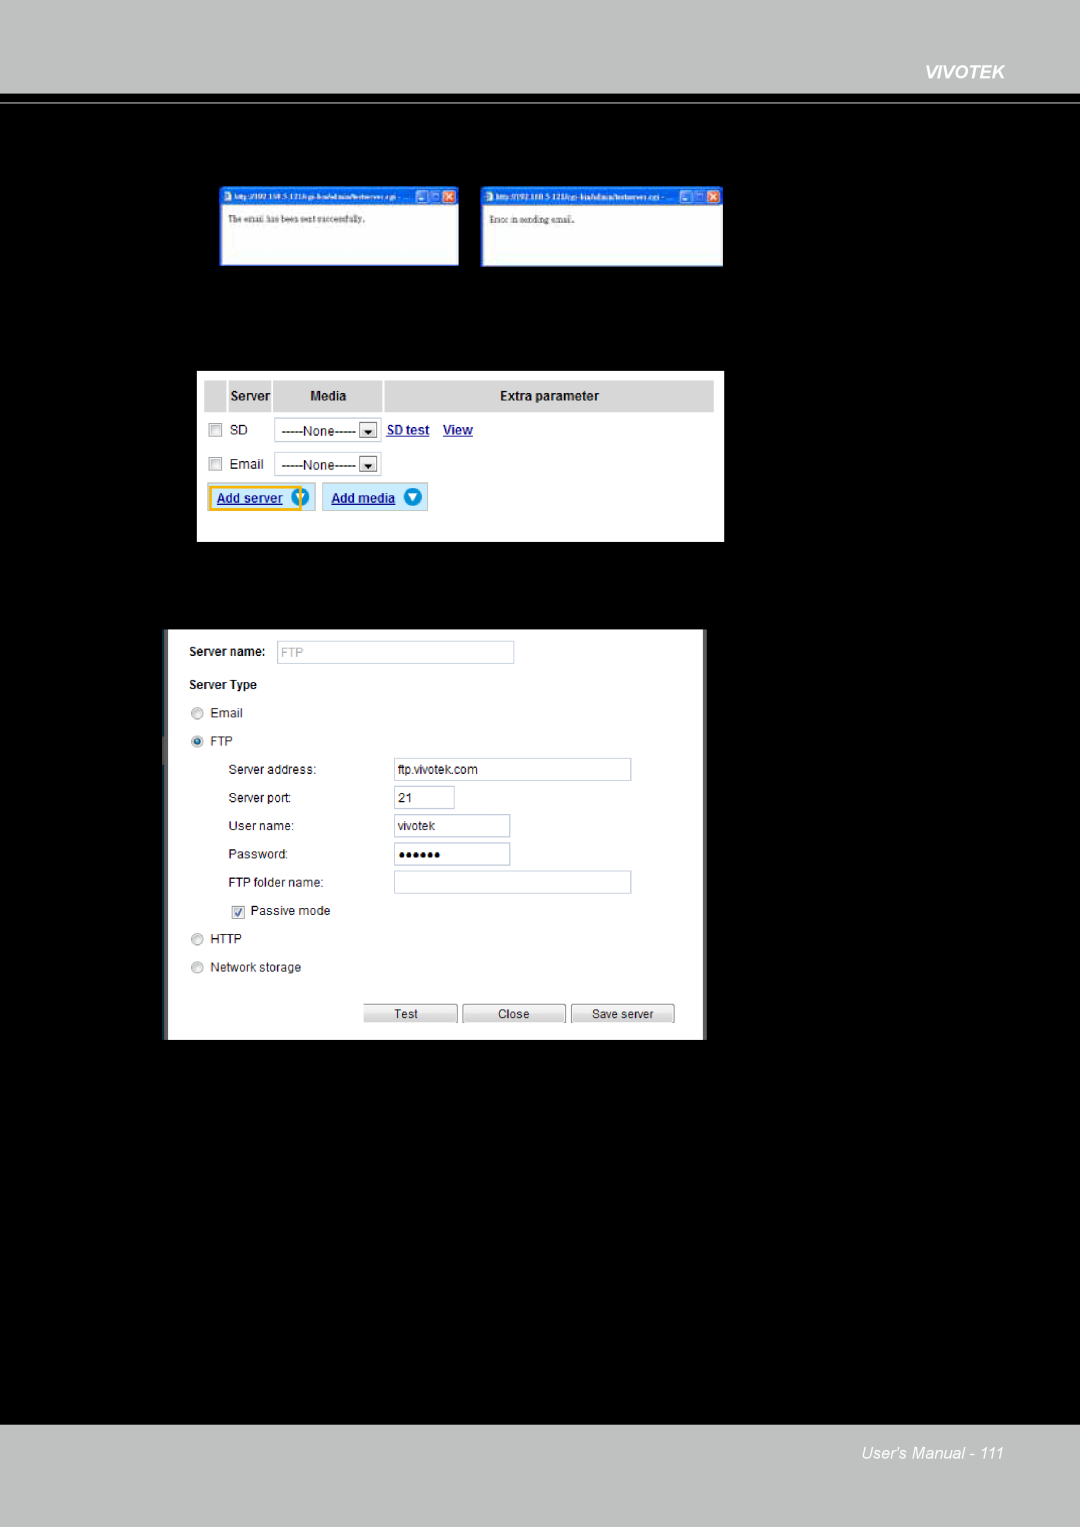 Vivotek FD8167-(T) user manual Click Save server to enable the settings 